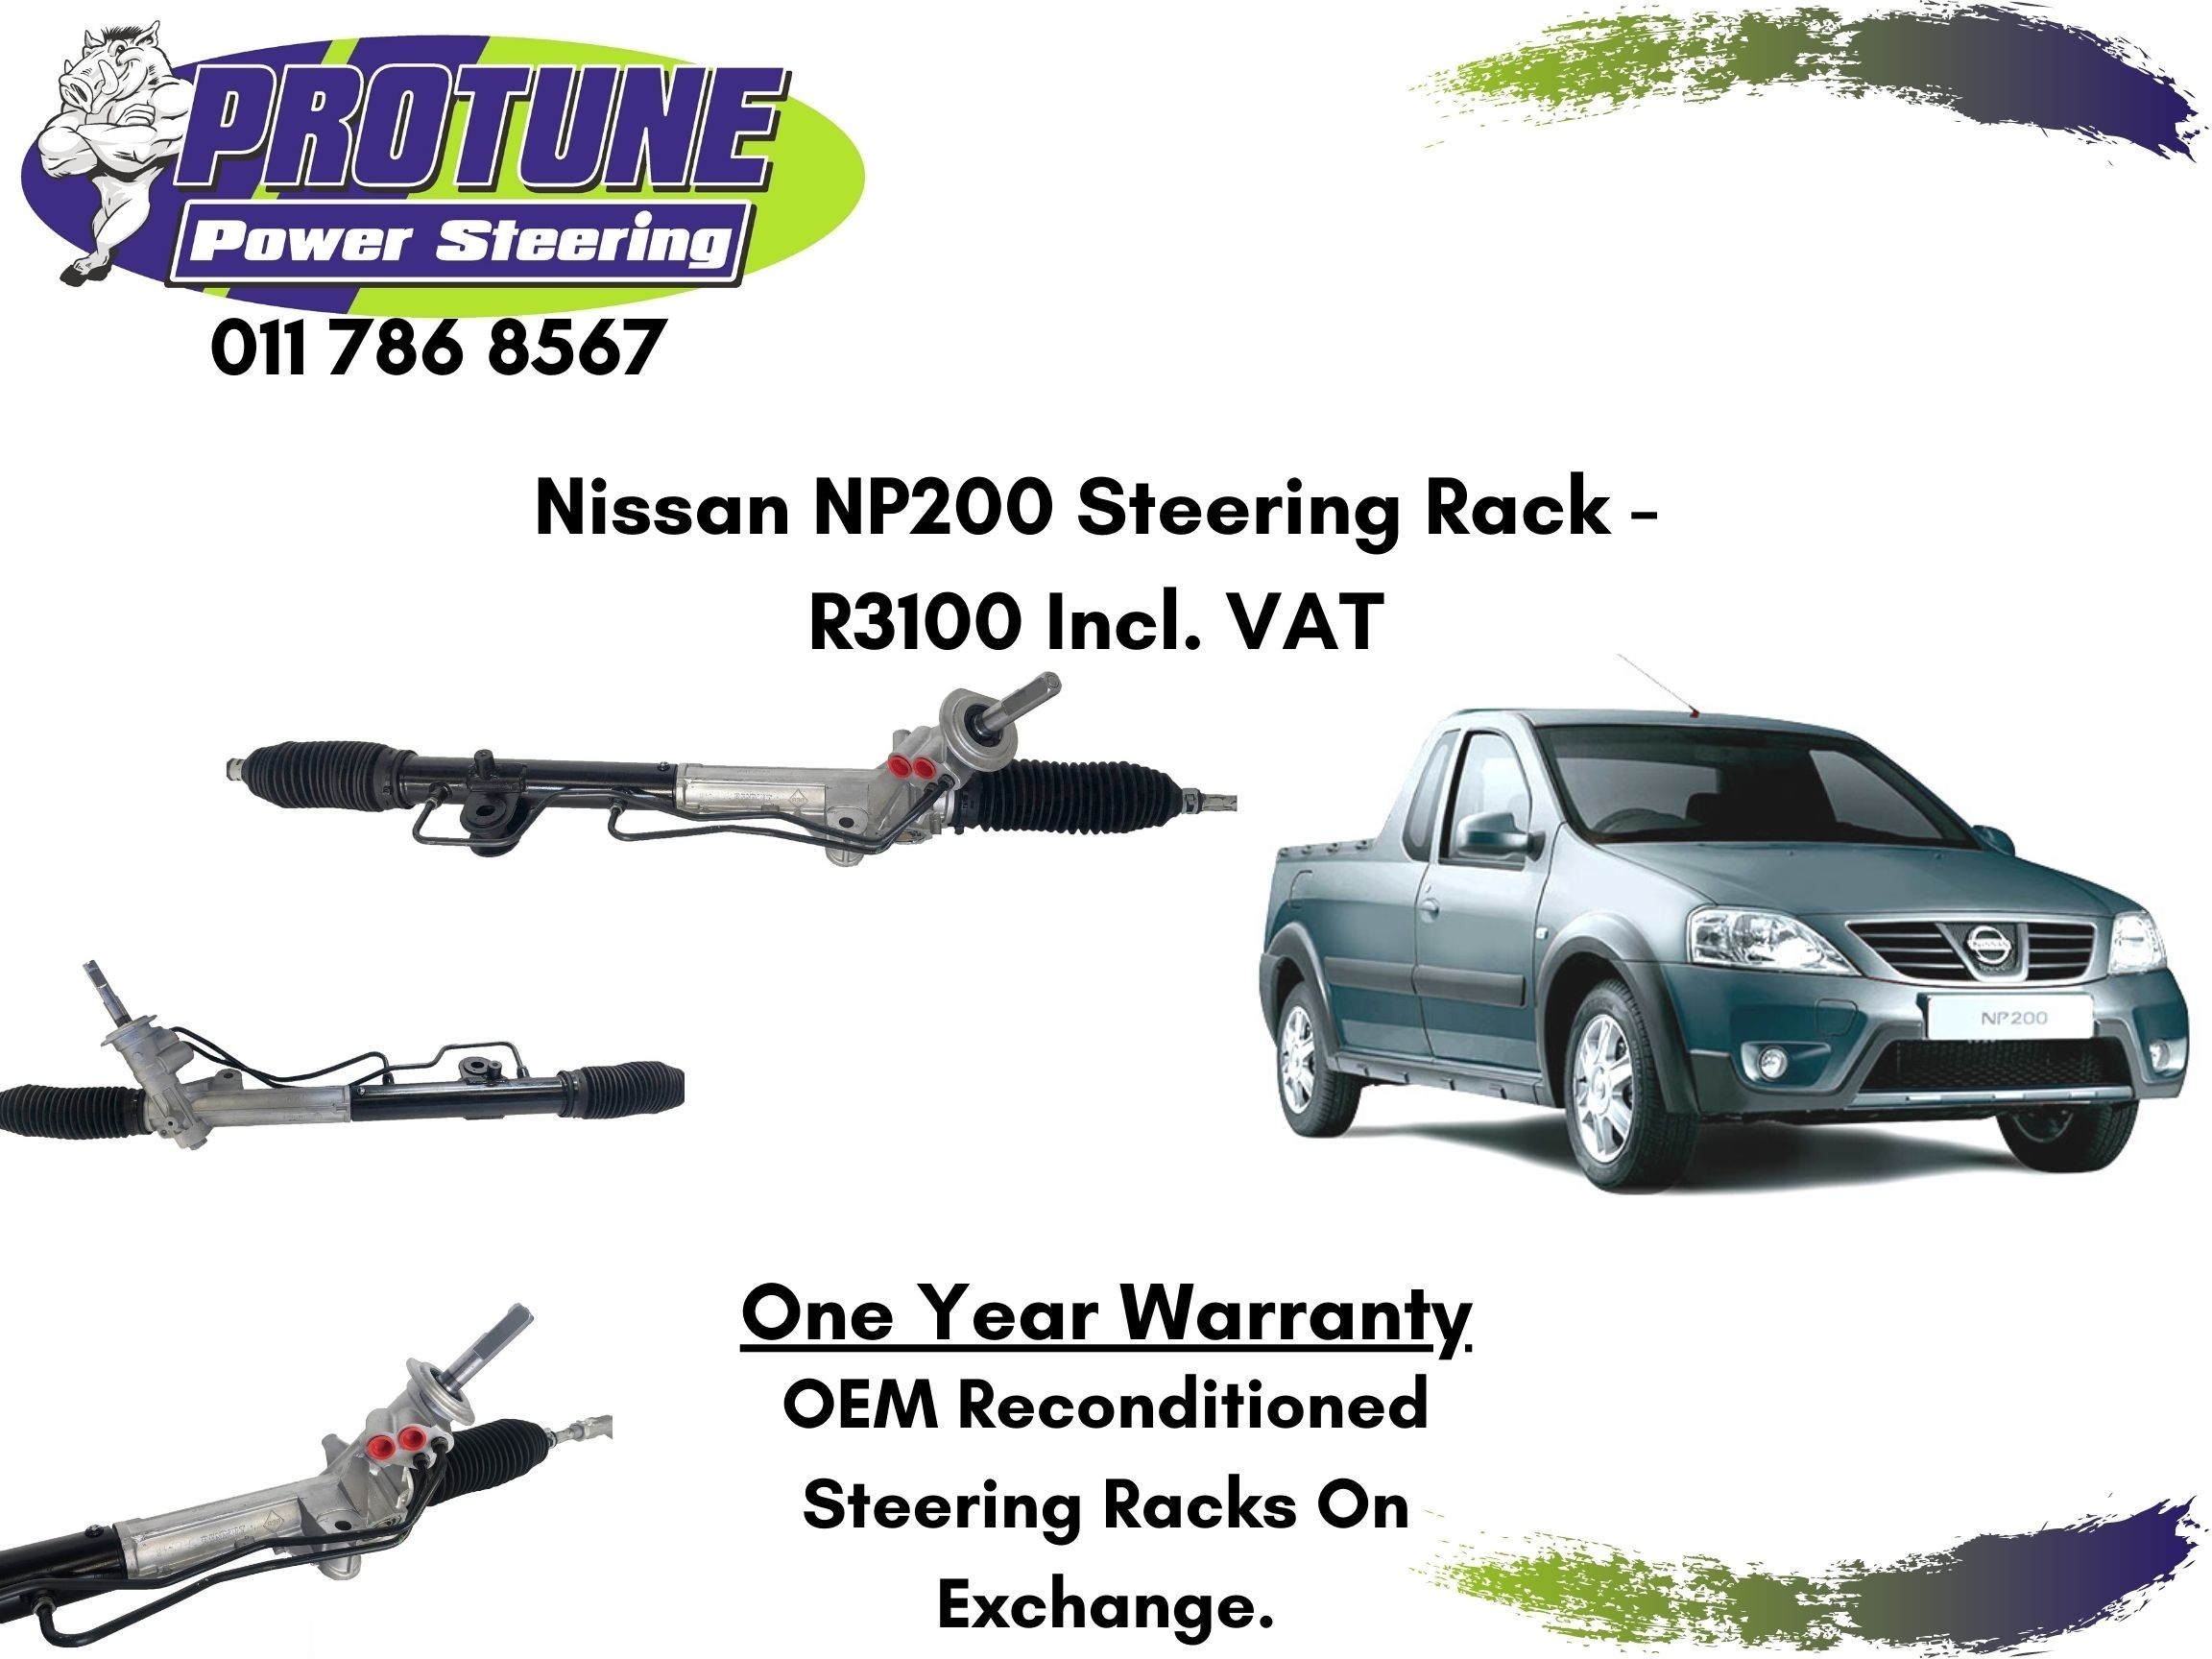 Nissan NP200  OEM Reconditioned Steering Racks